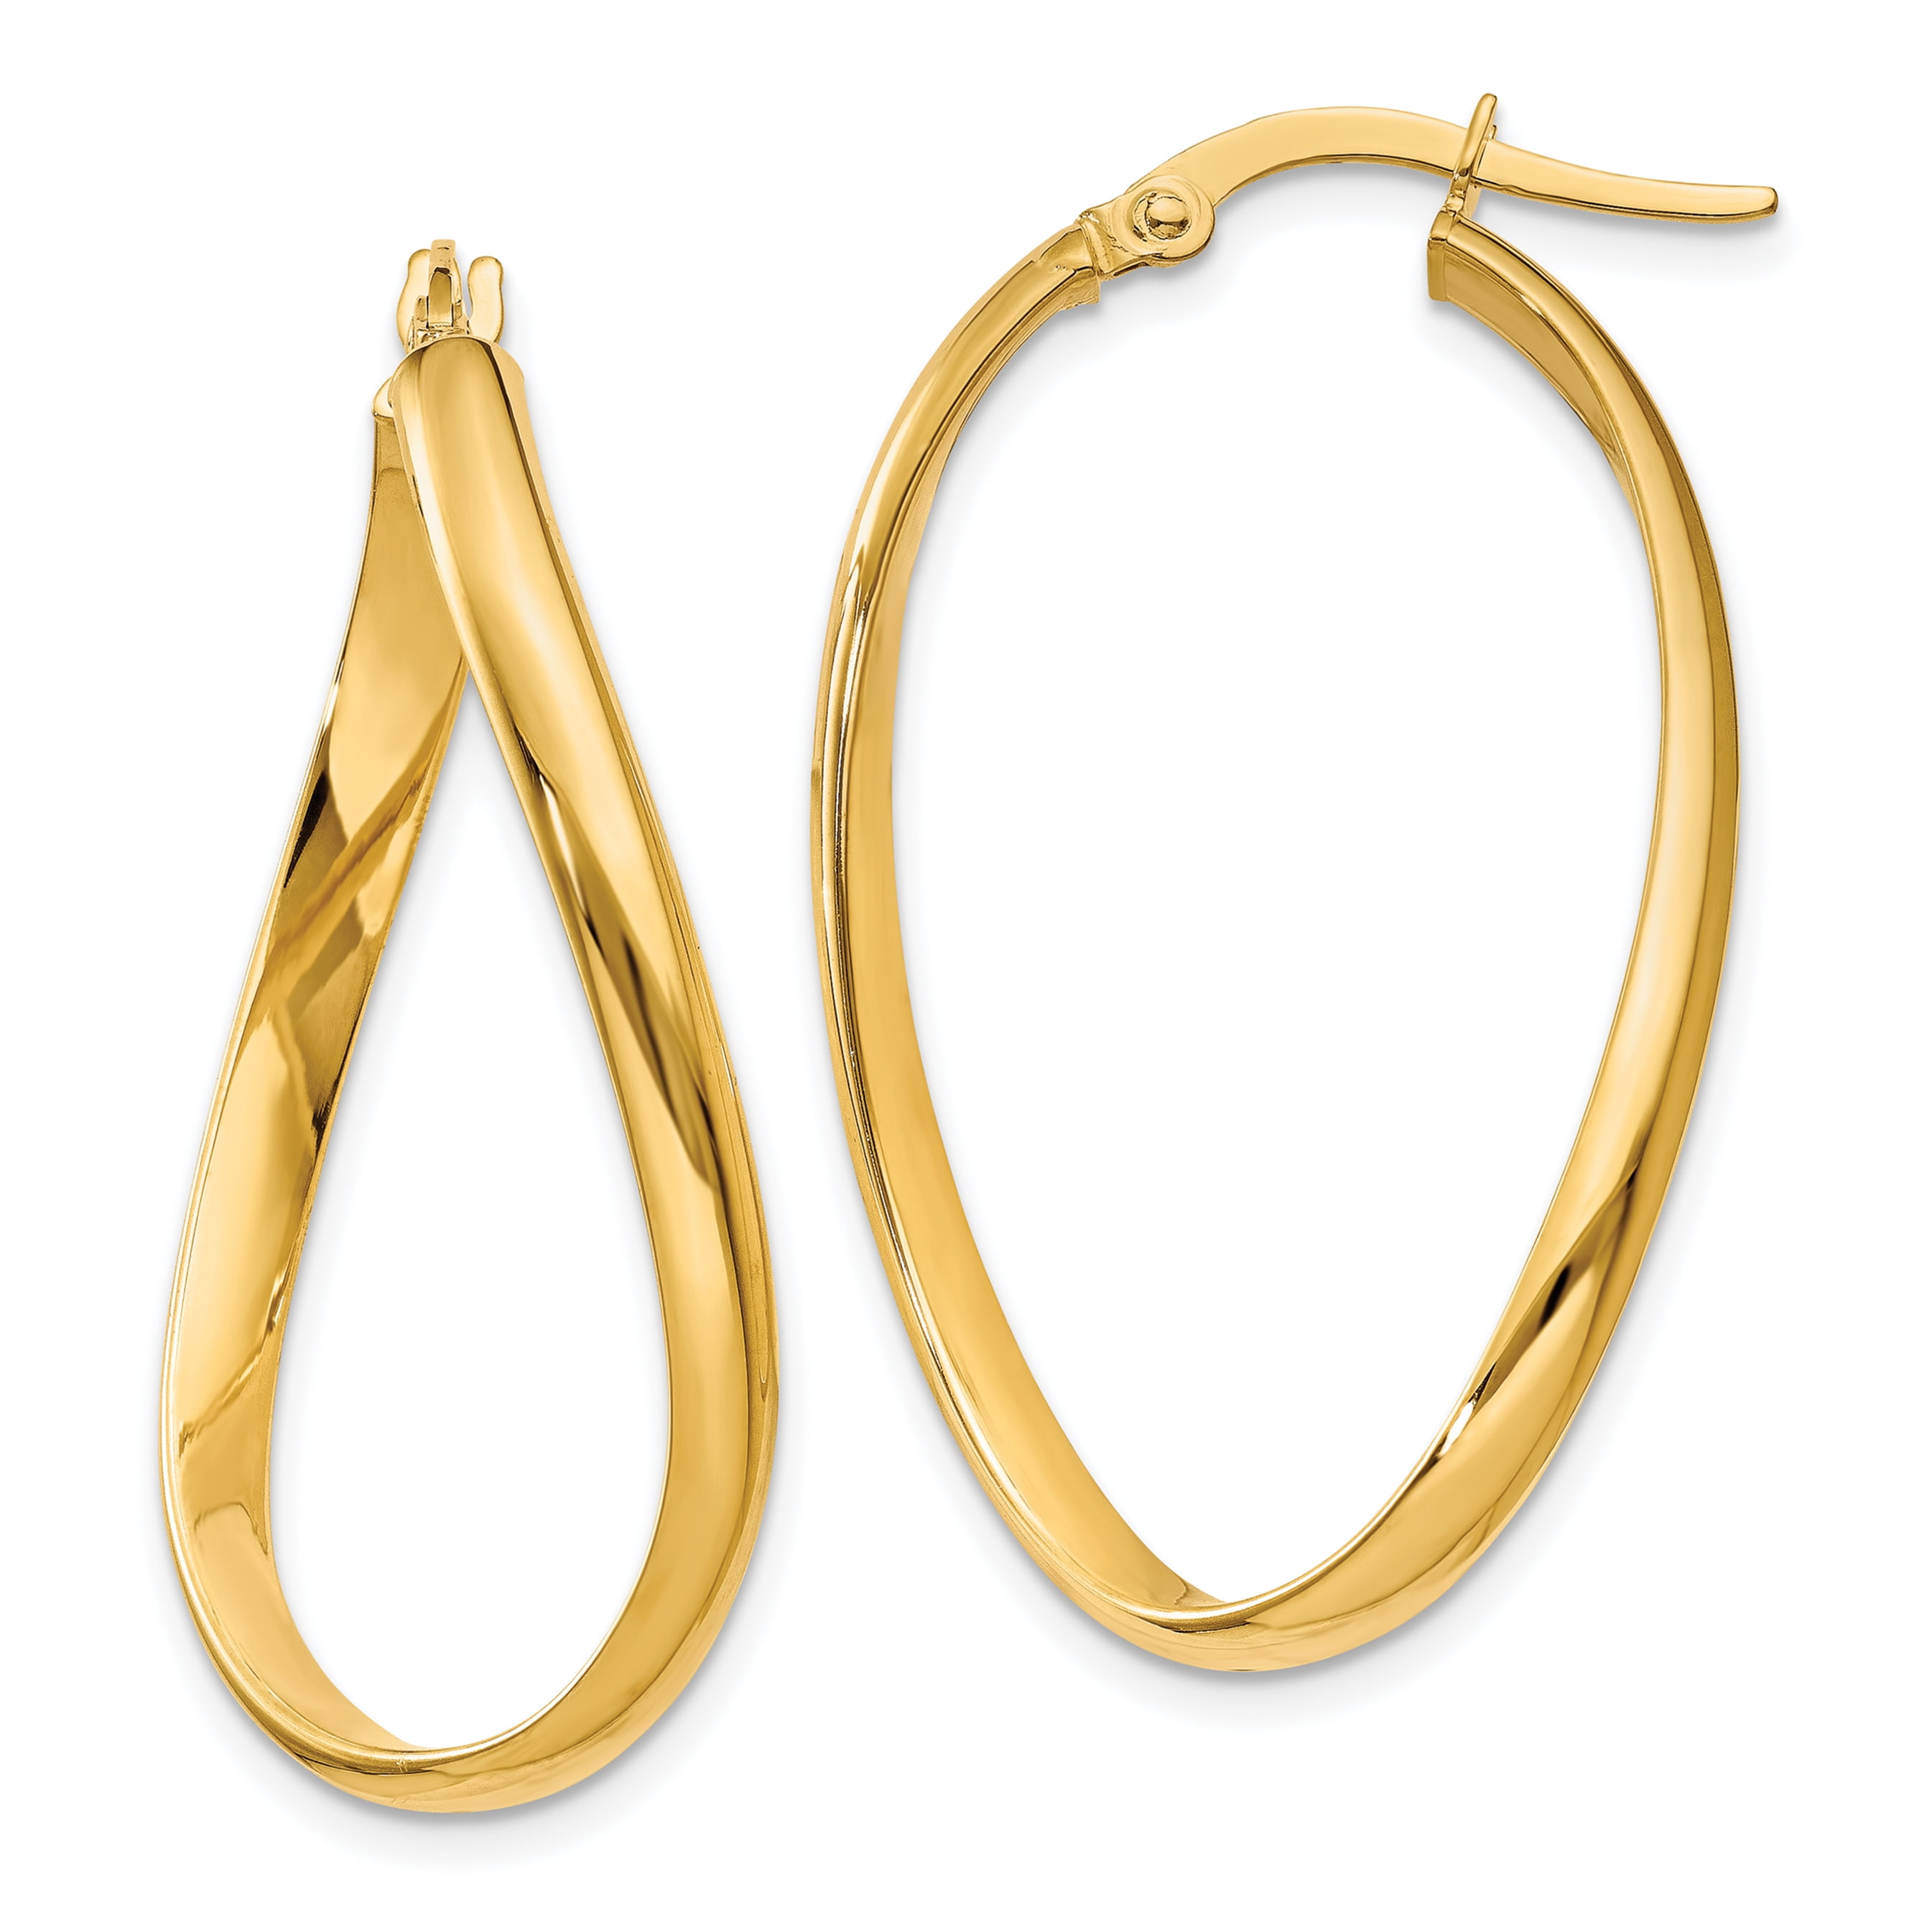 14k Yellow Gold 3mm Oval Hoop Earrings 